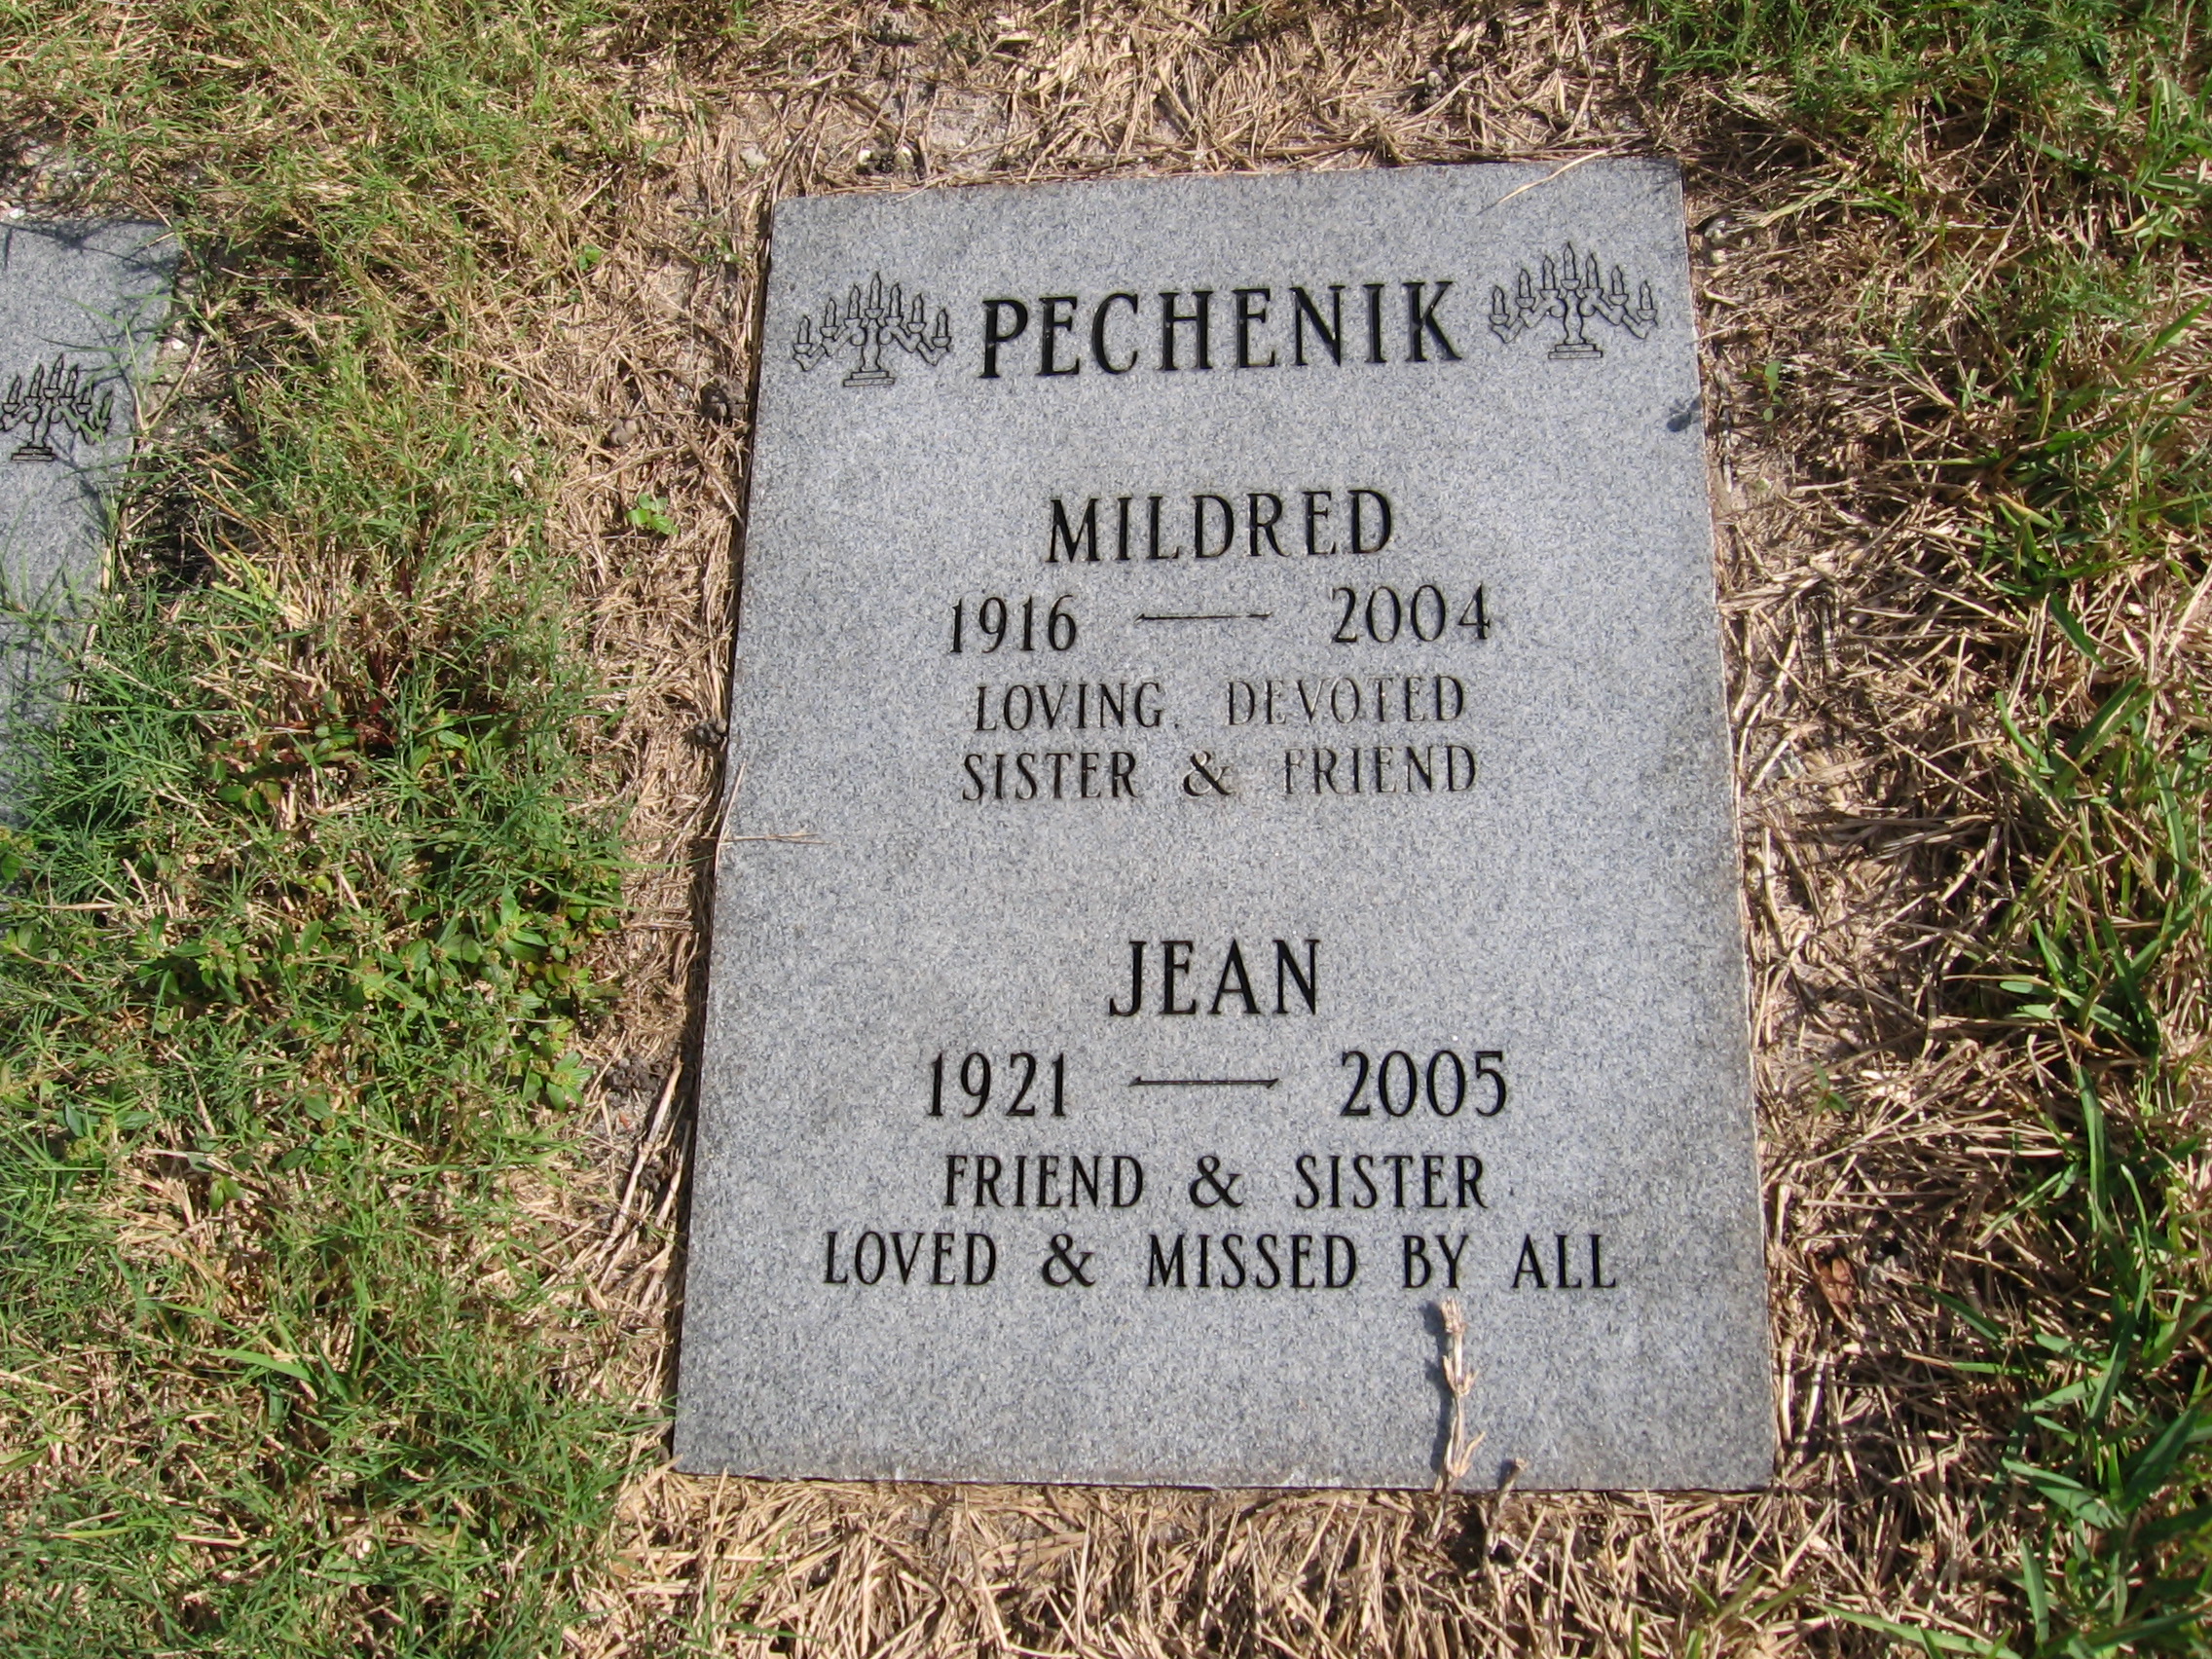 Mildred Pechenik